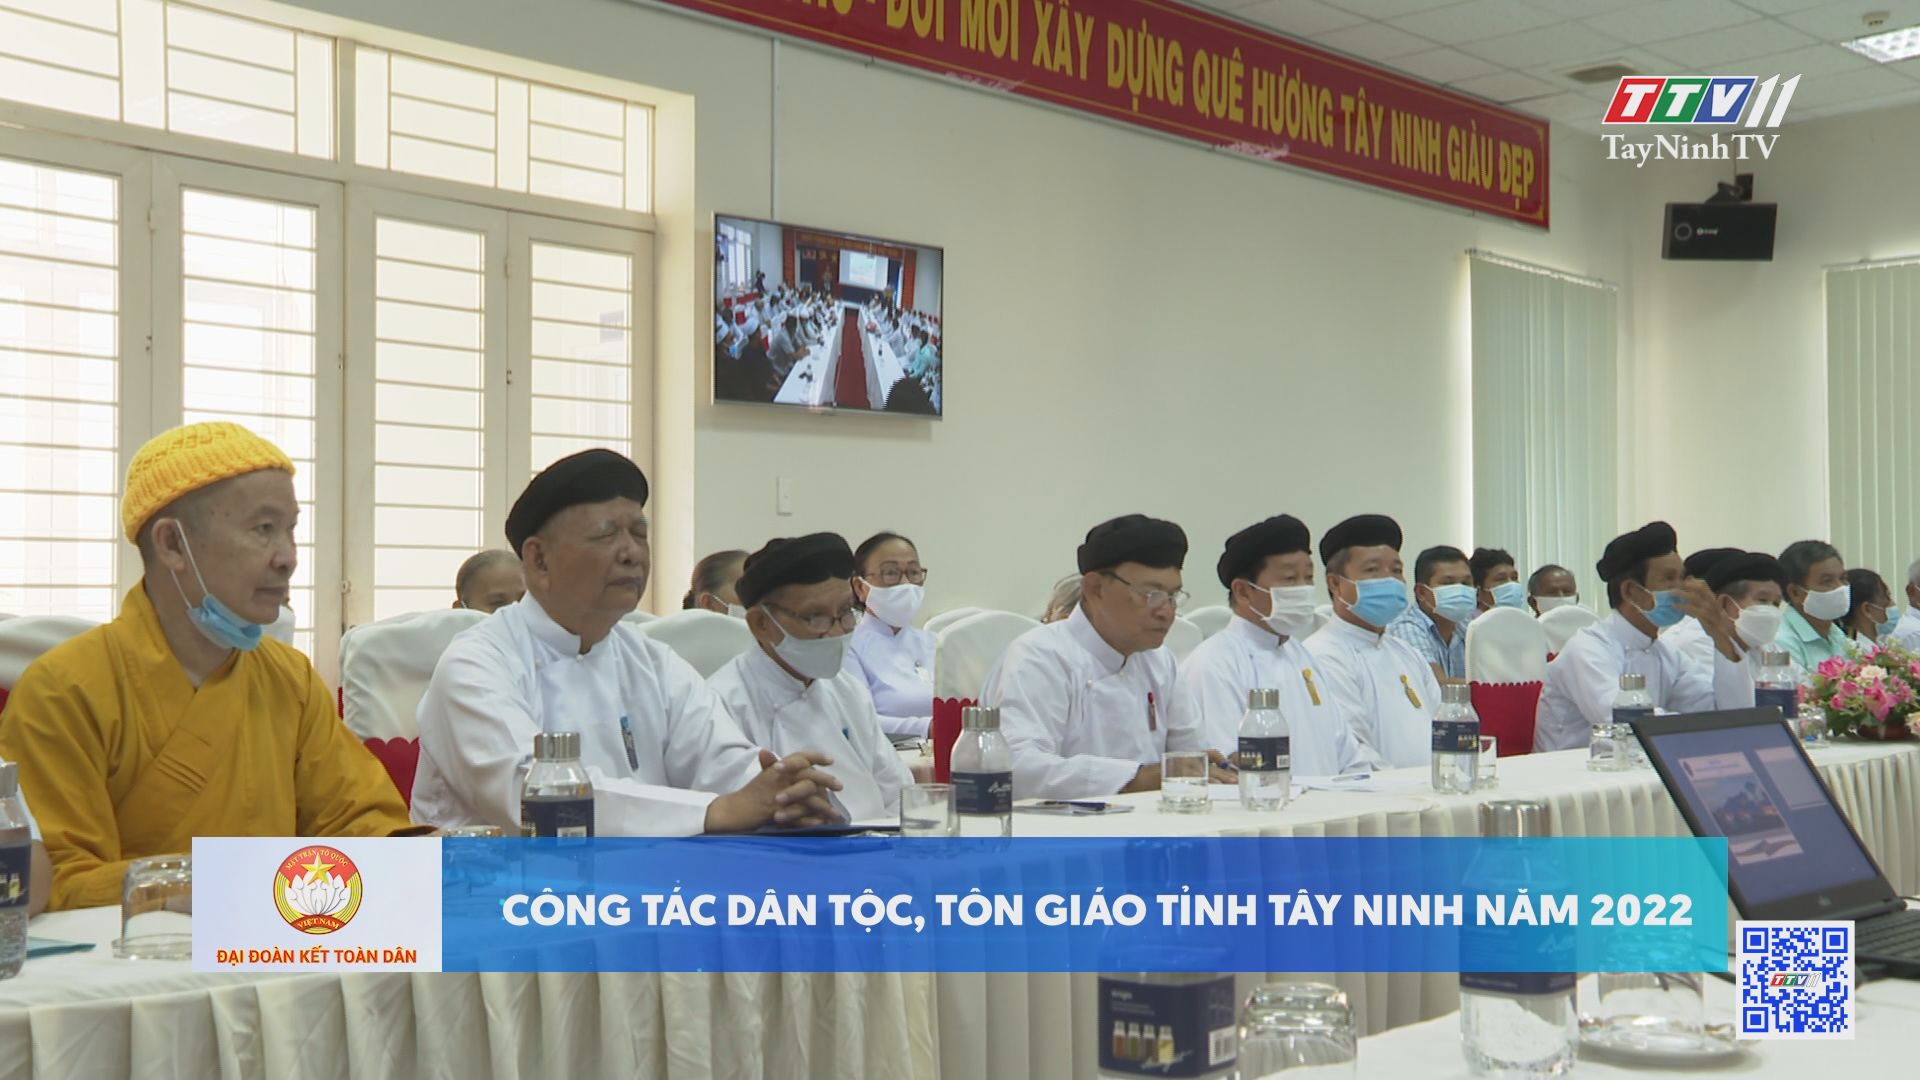 Công tác dân tộc, tôn giáo tỉnh Tây Ninh năm 2022 | Đại đoàn kết toàn dân | TayNinhTV